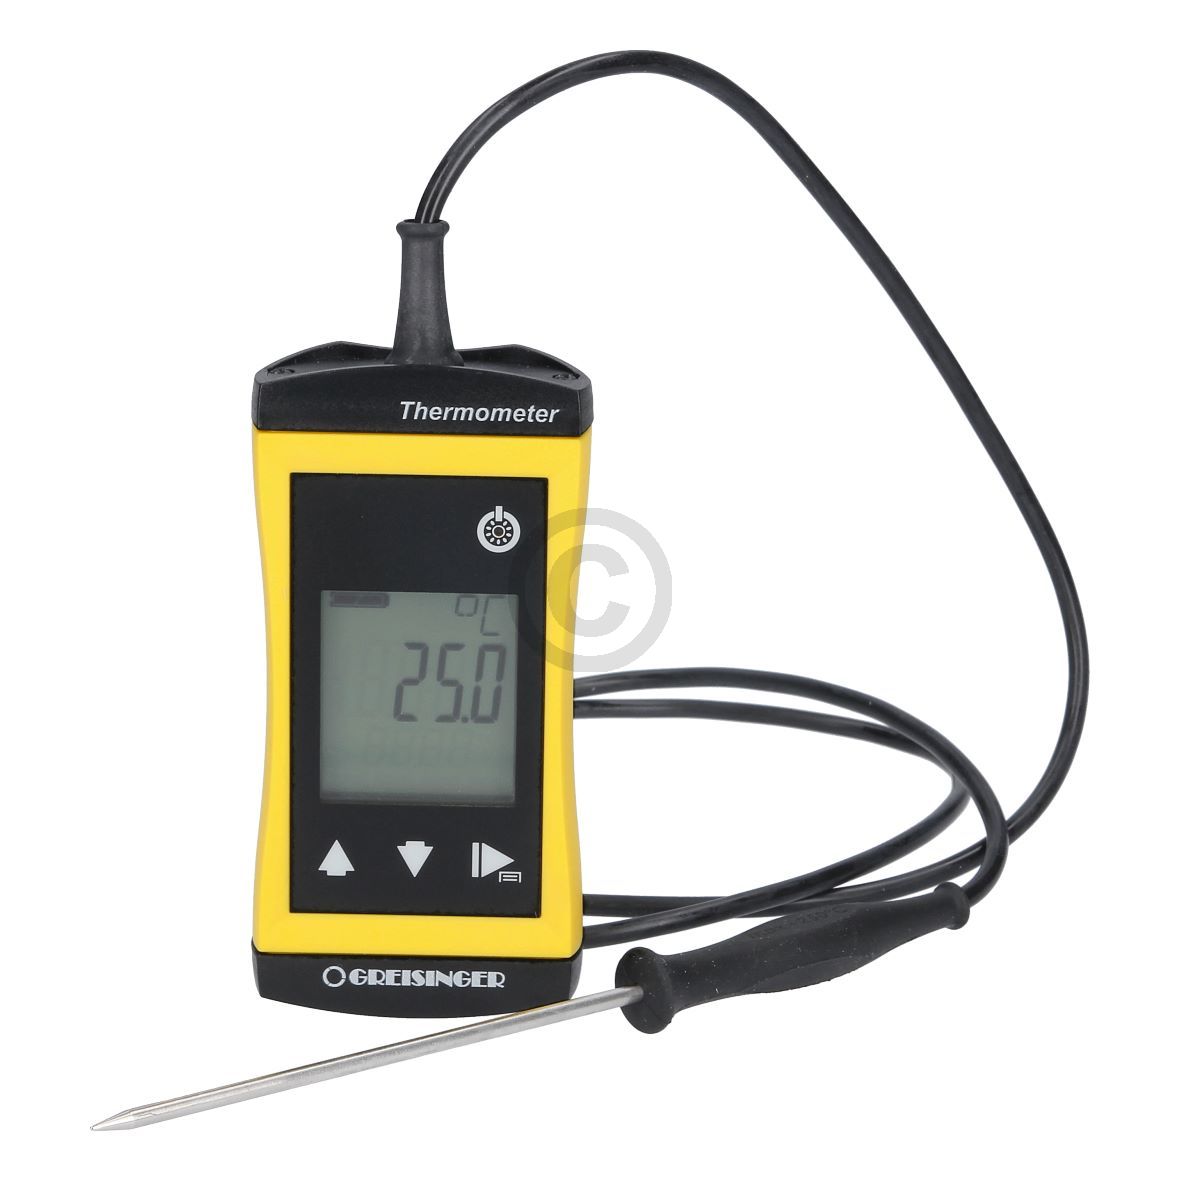 Digitalthermometer Greisinger G1720 PSG3 mit Einstechfühler GTH 175 PT-K